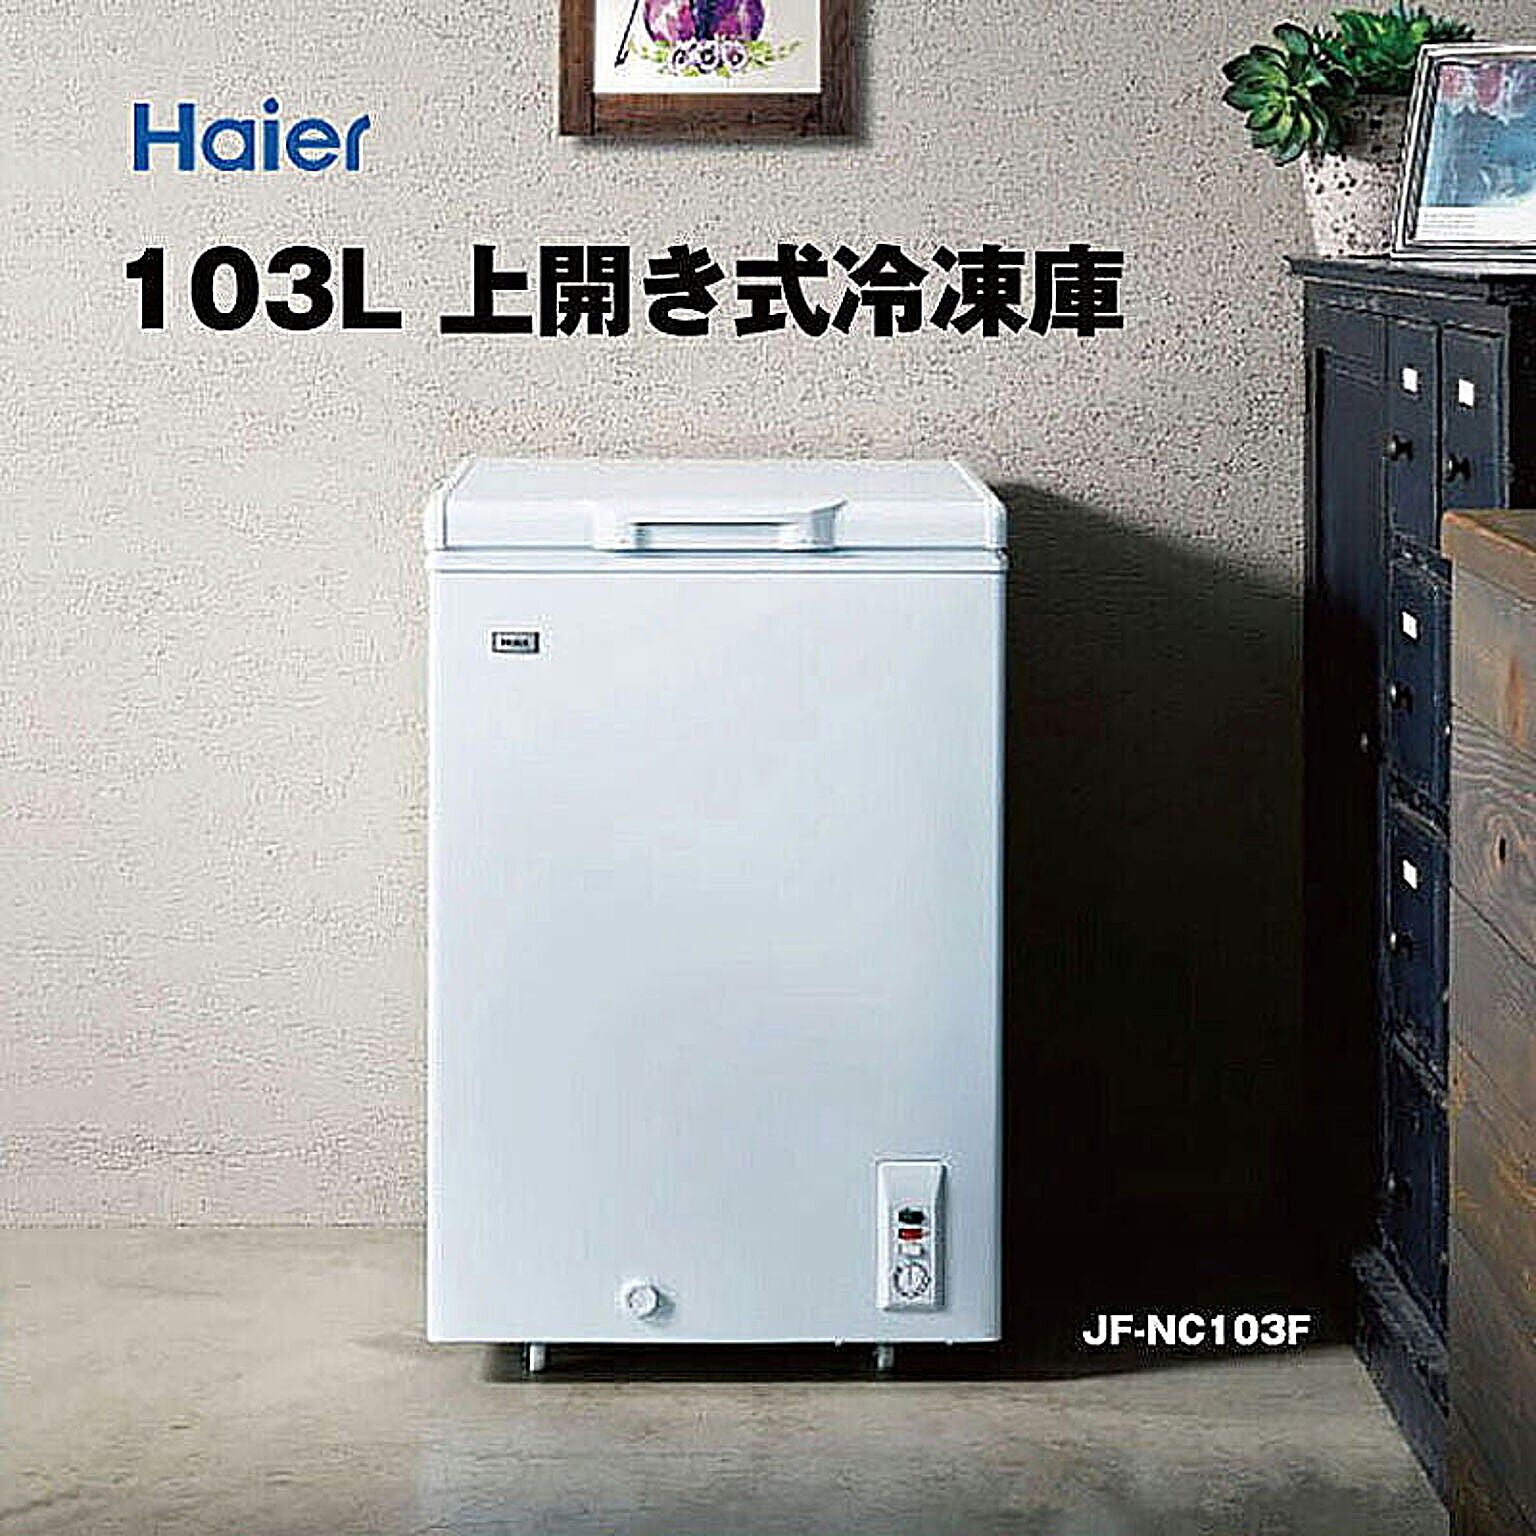 冷凍庫 小型 上開き 家庭用 103L チェストタイプ 直冷式 長期保存におすすめ 買い置き 急冷スイッチ キャスター移動 ホワイト ハイアール Haier JF-NC103F(W)